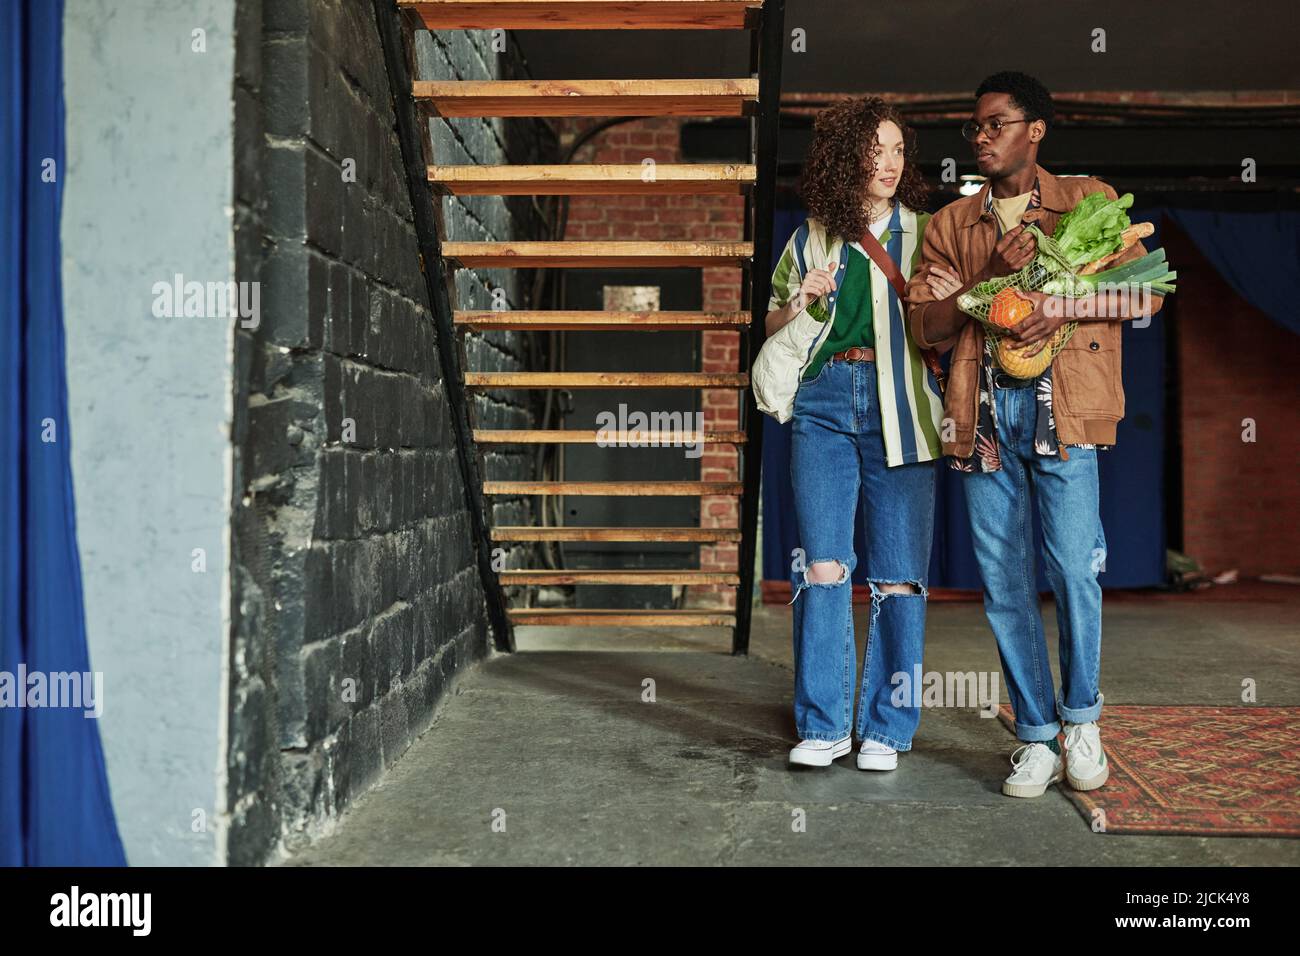 Junge Frau hält ihren Freund mit frischem Gemüse in der Einkaufstasche am Arm, während beide sich in ihrer Loft-Wohnung bewegen Stockfoto